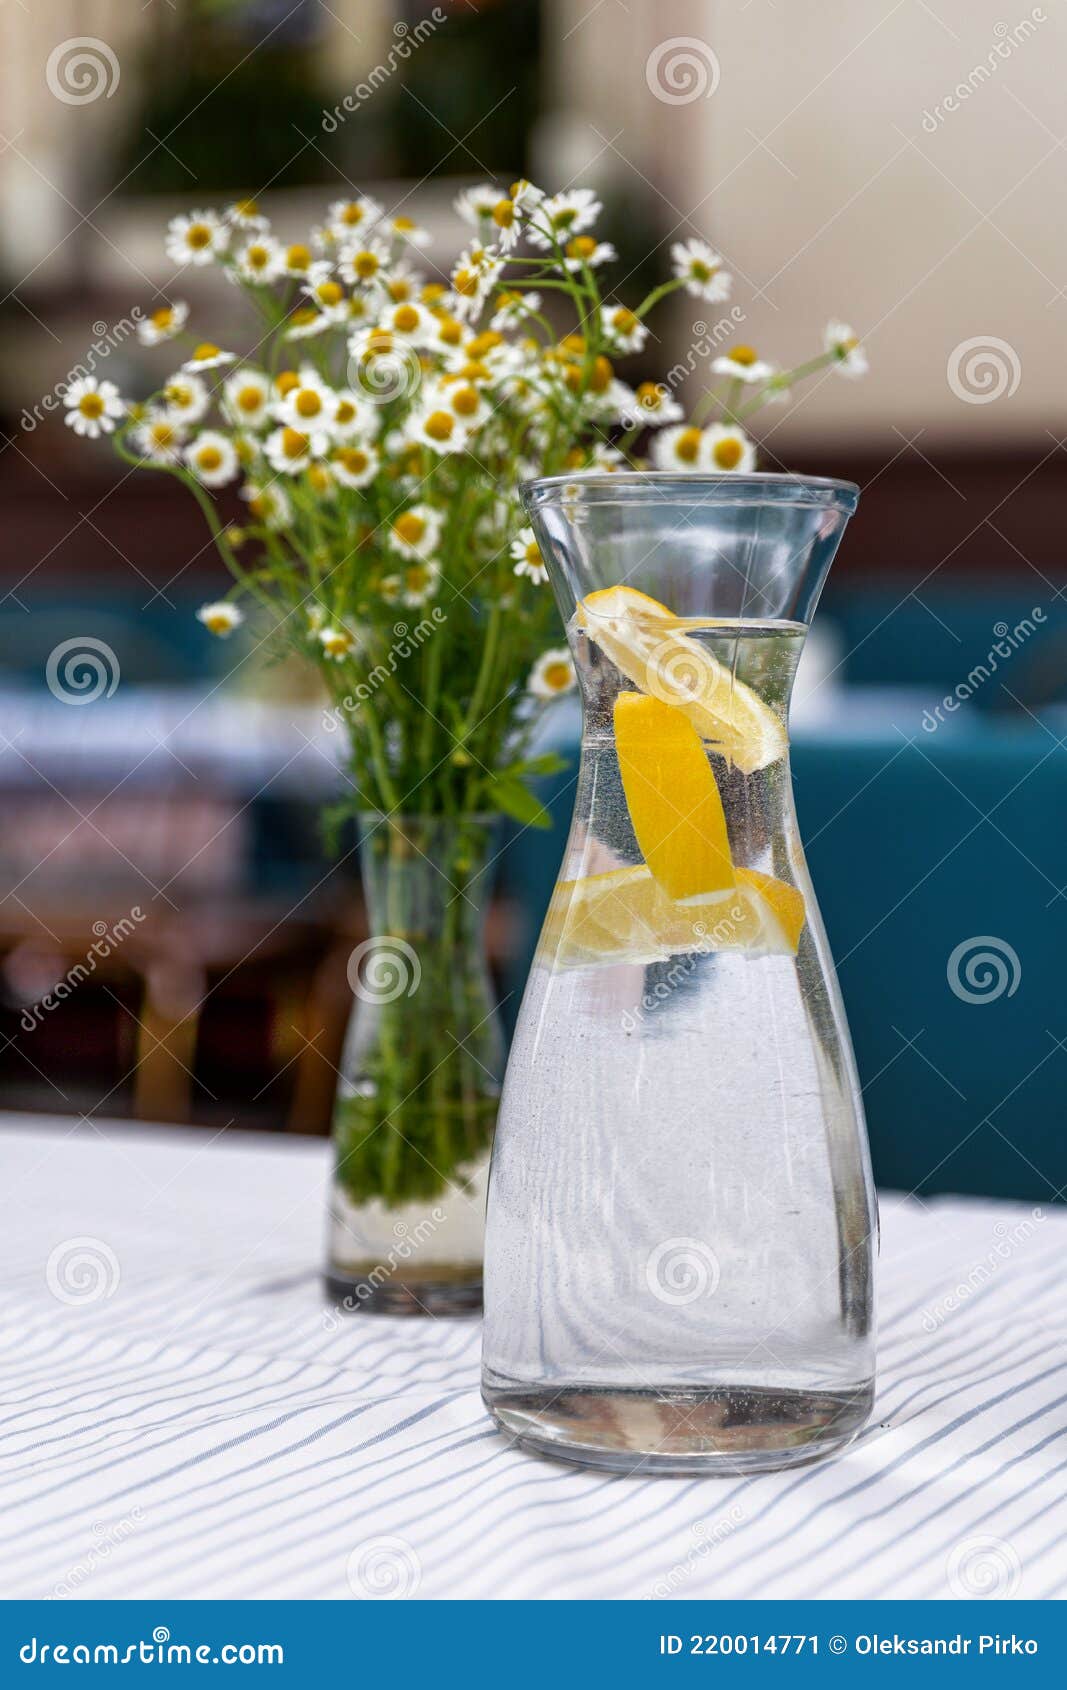 Agua Con Limón En La Jarra De Cristal. Enfoque Selectivo Fotos